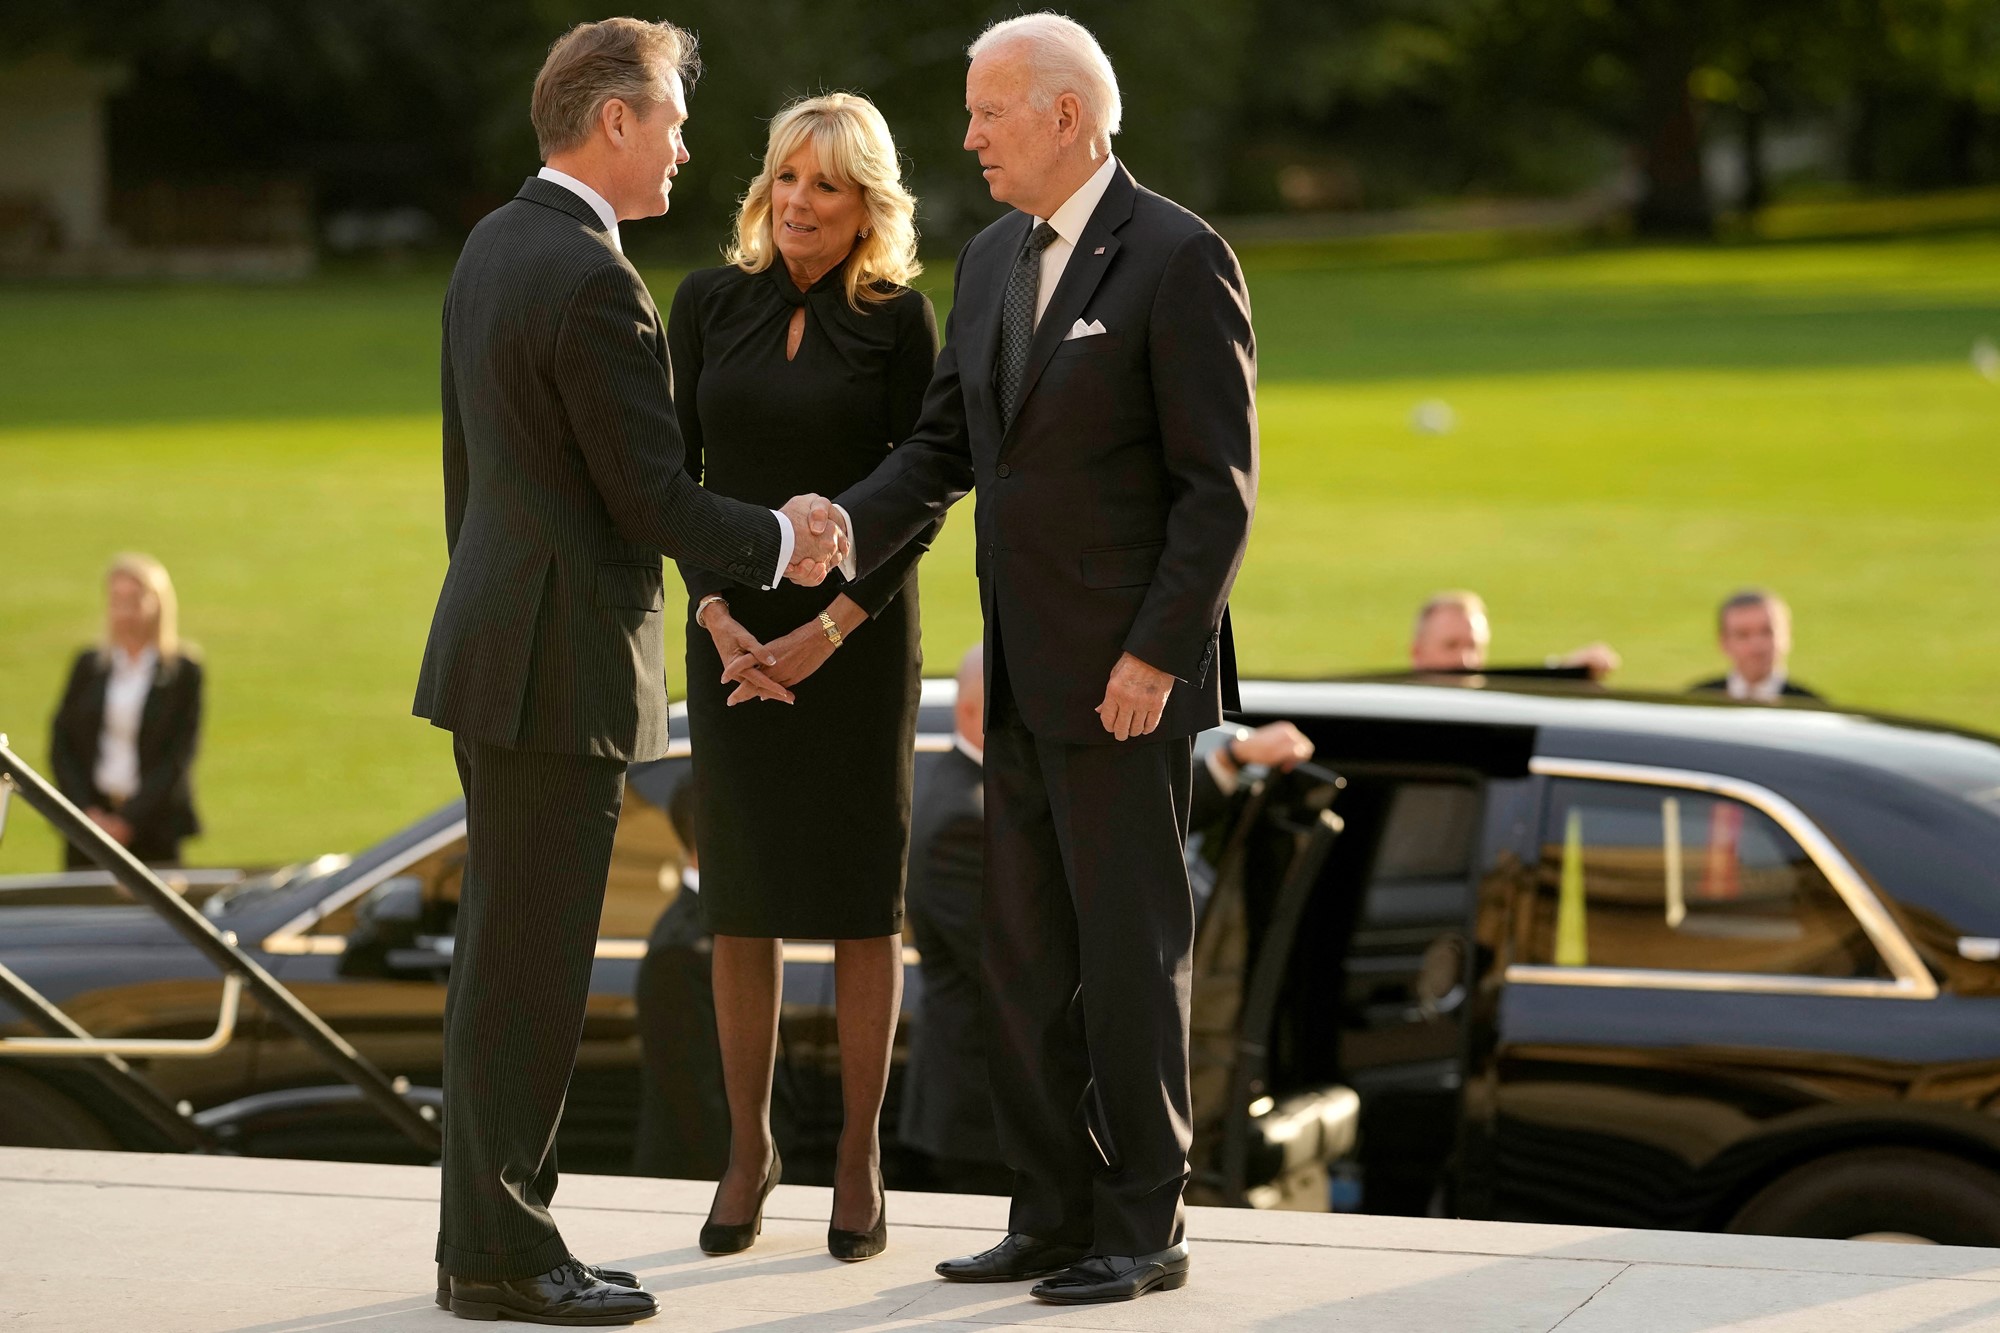 Joe Biden shakes hand with a man. Jill Biden stands by her husband's side